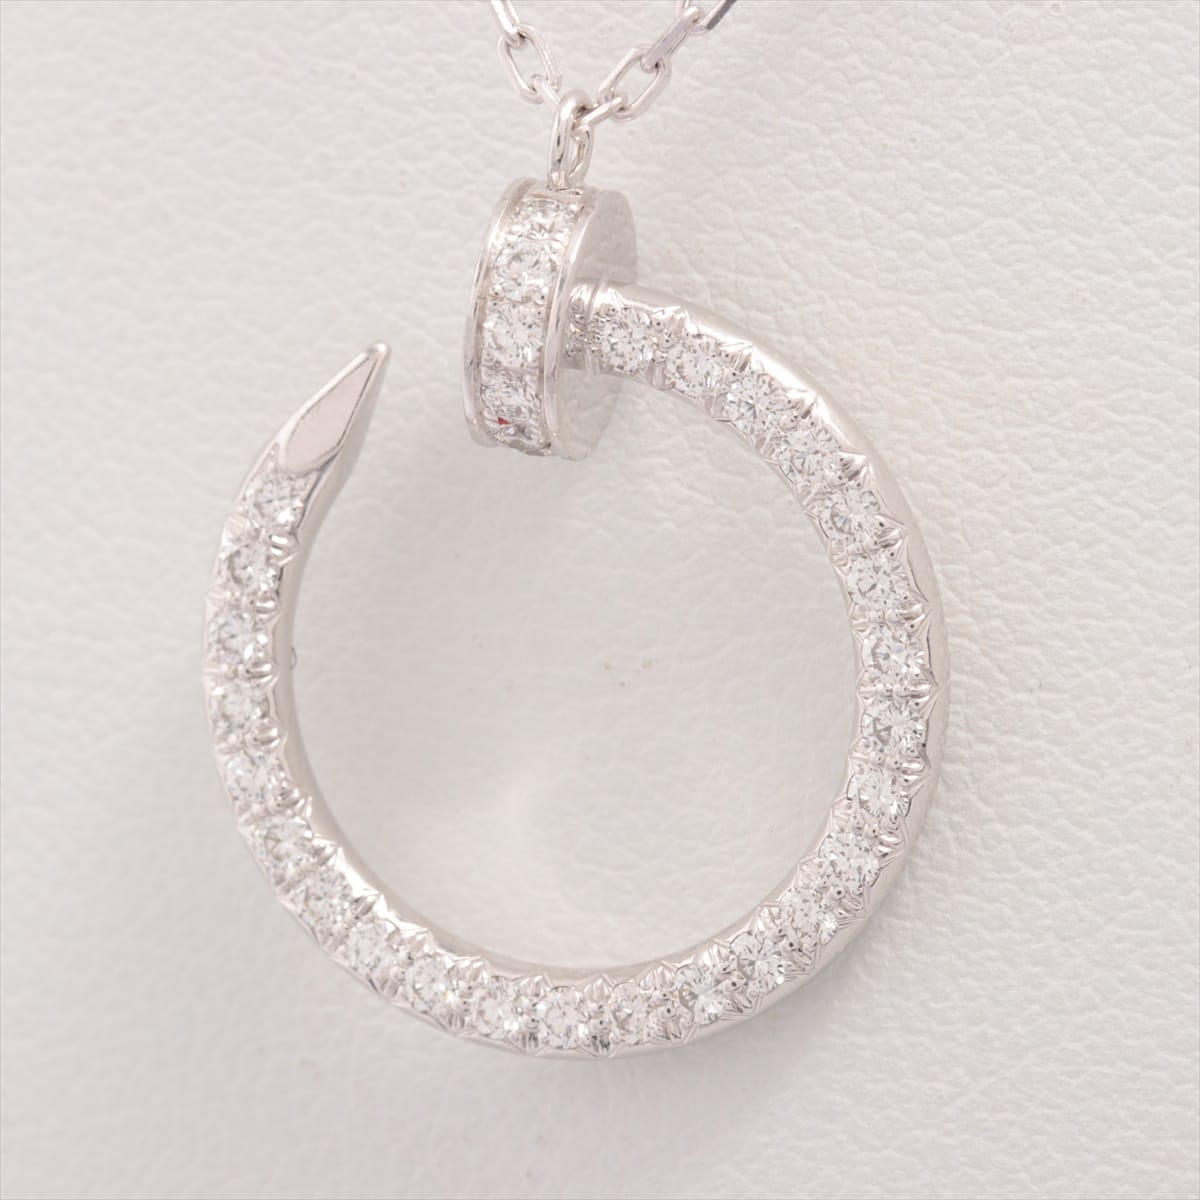 Cartier Juste un Clou diamond Necklace 750(WG) 5.6g